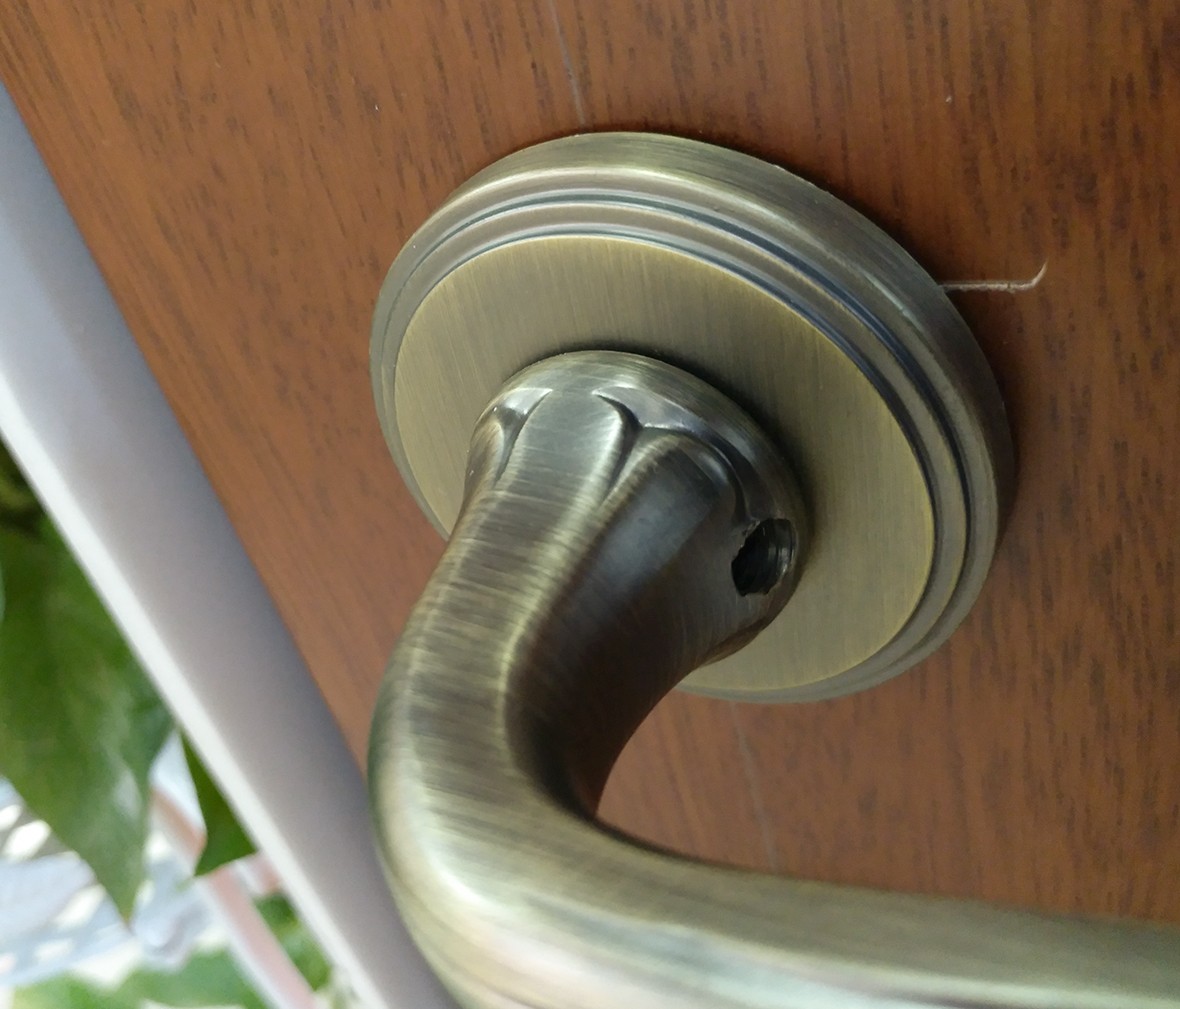 晾霸五金 米开朗705-555MAB型号门锁 锌合金材质 优质门锁 情景 细节